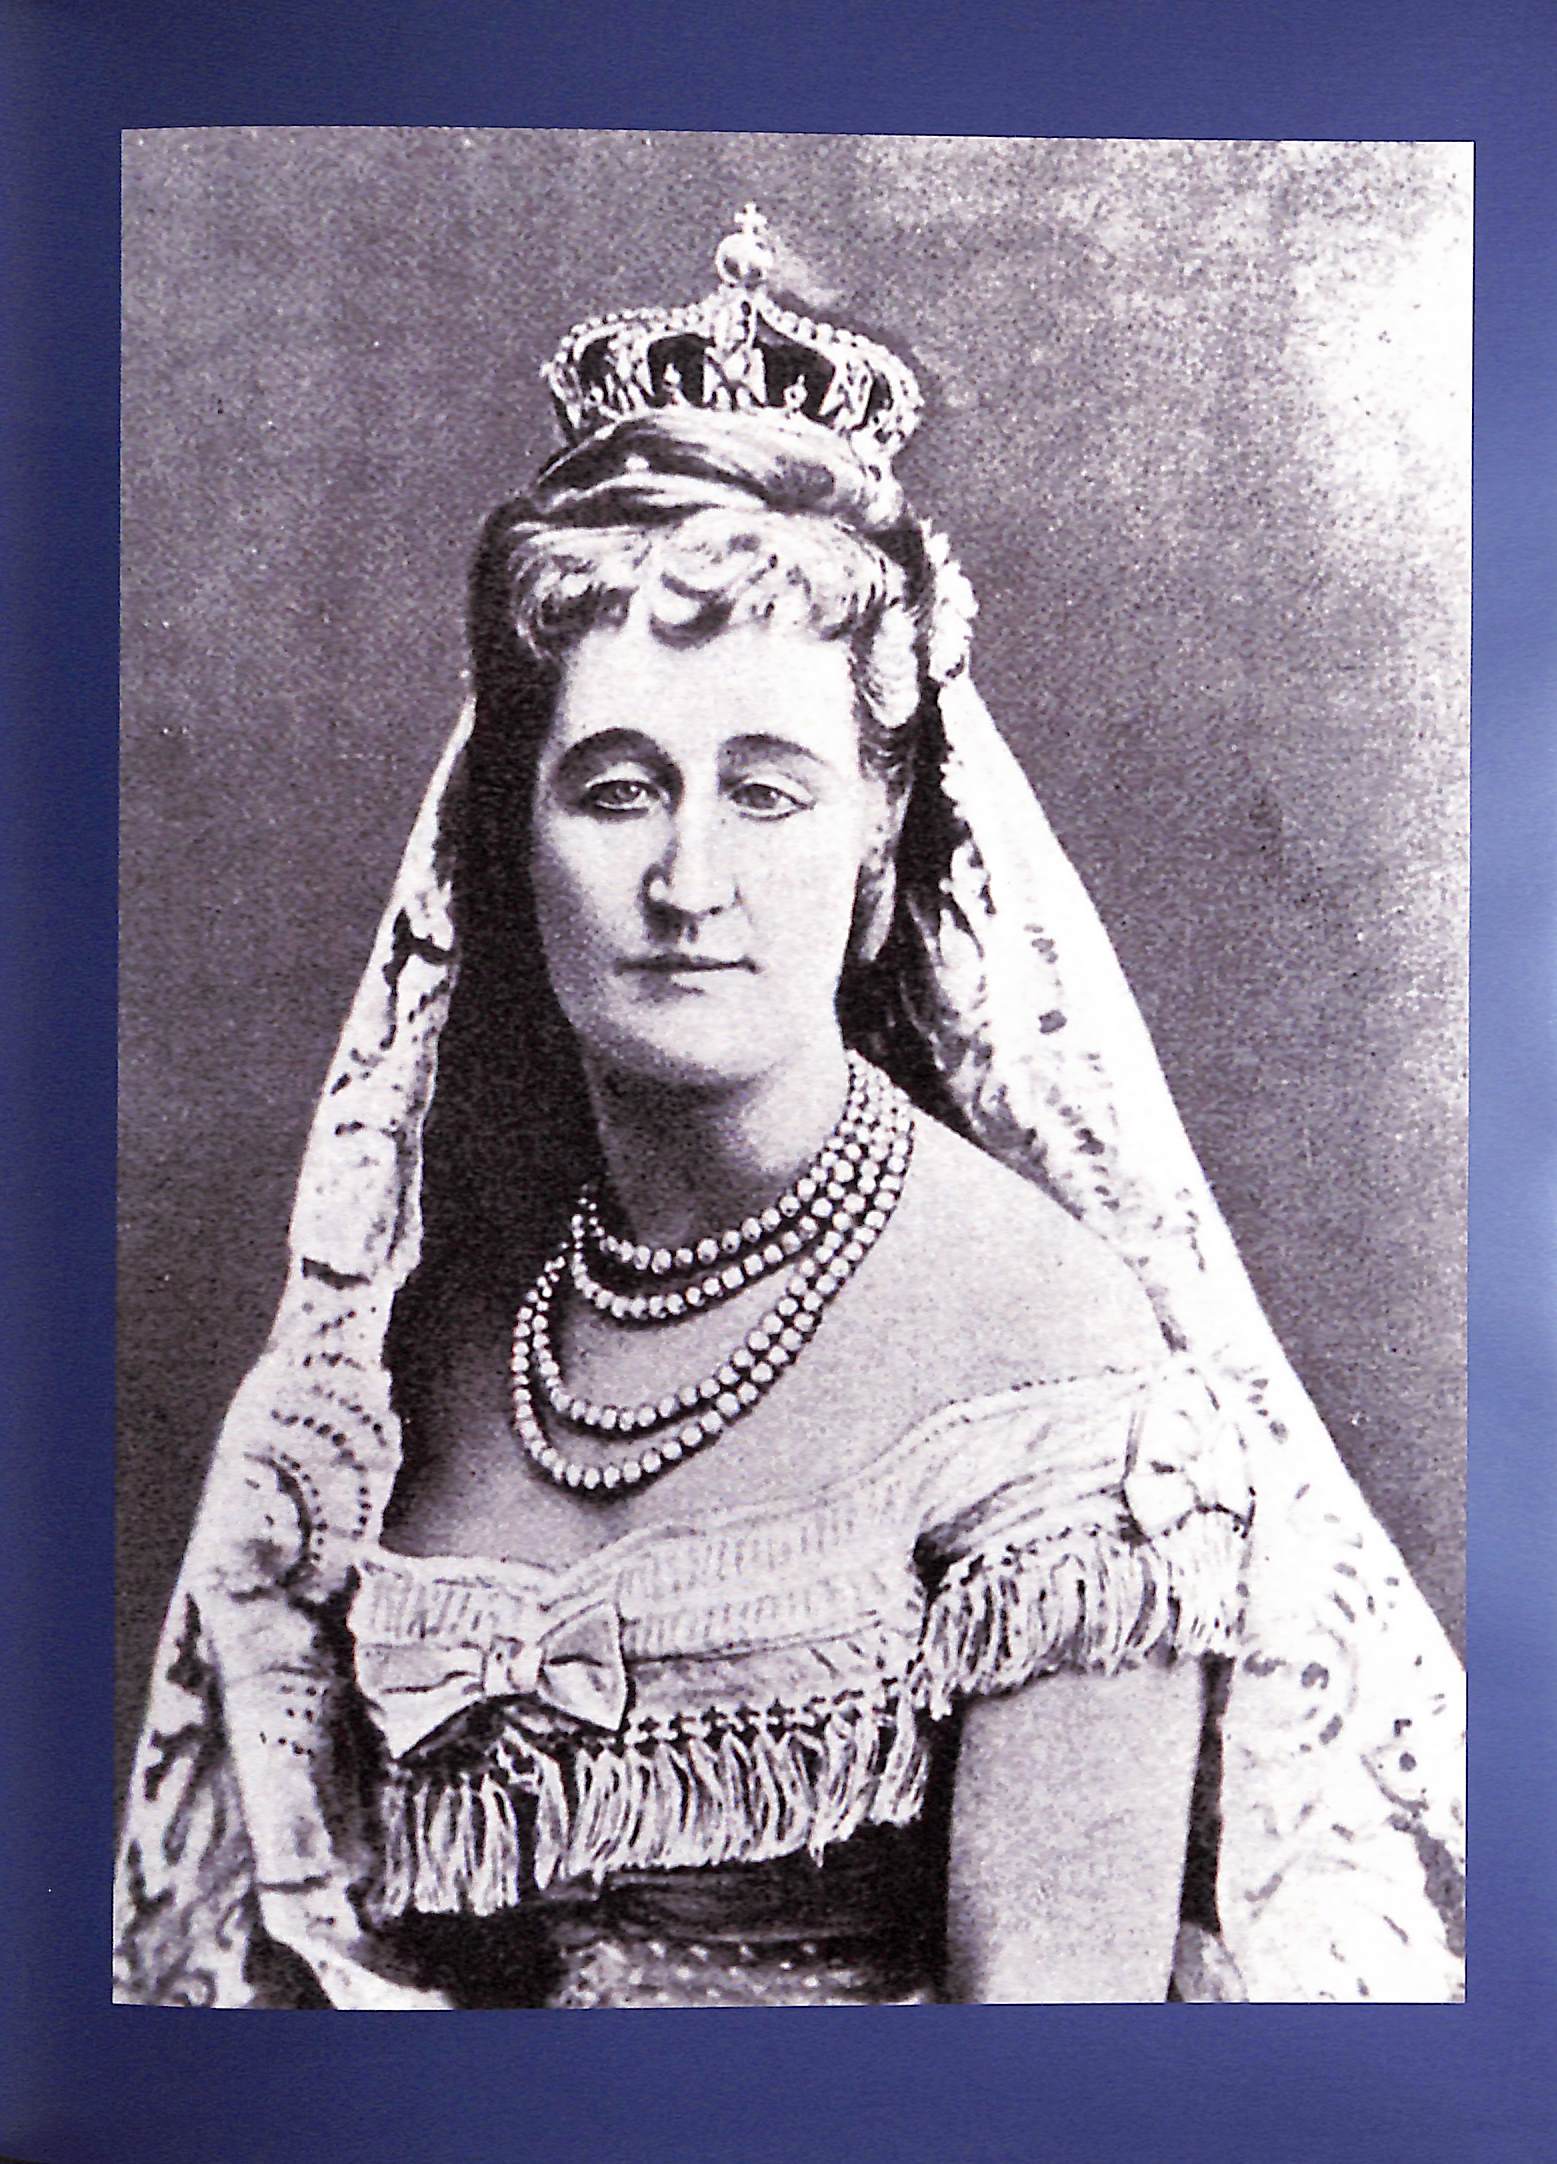 EraGem Blog: Empress Eugenie's Bow Brooch: A Detailed History